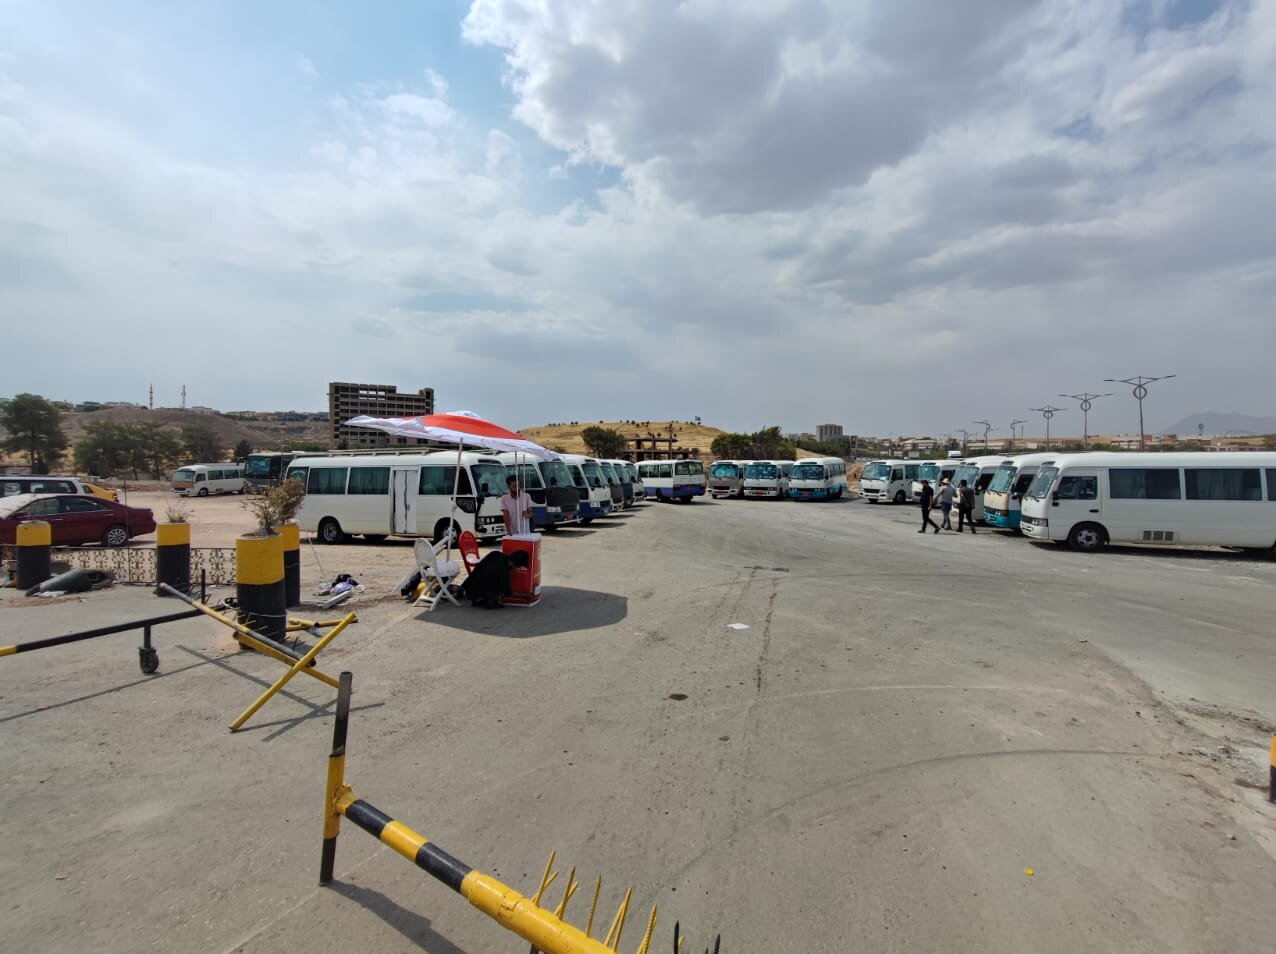 پذیرایی از زائران اربعین در موکبی با ظرفیت 15 هزار نفر در سلیمانیه عراق